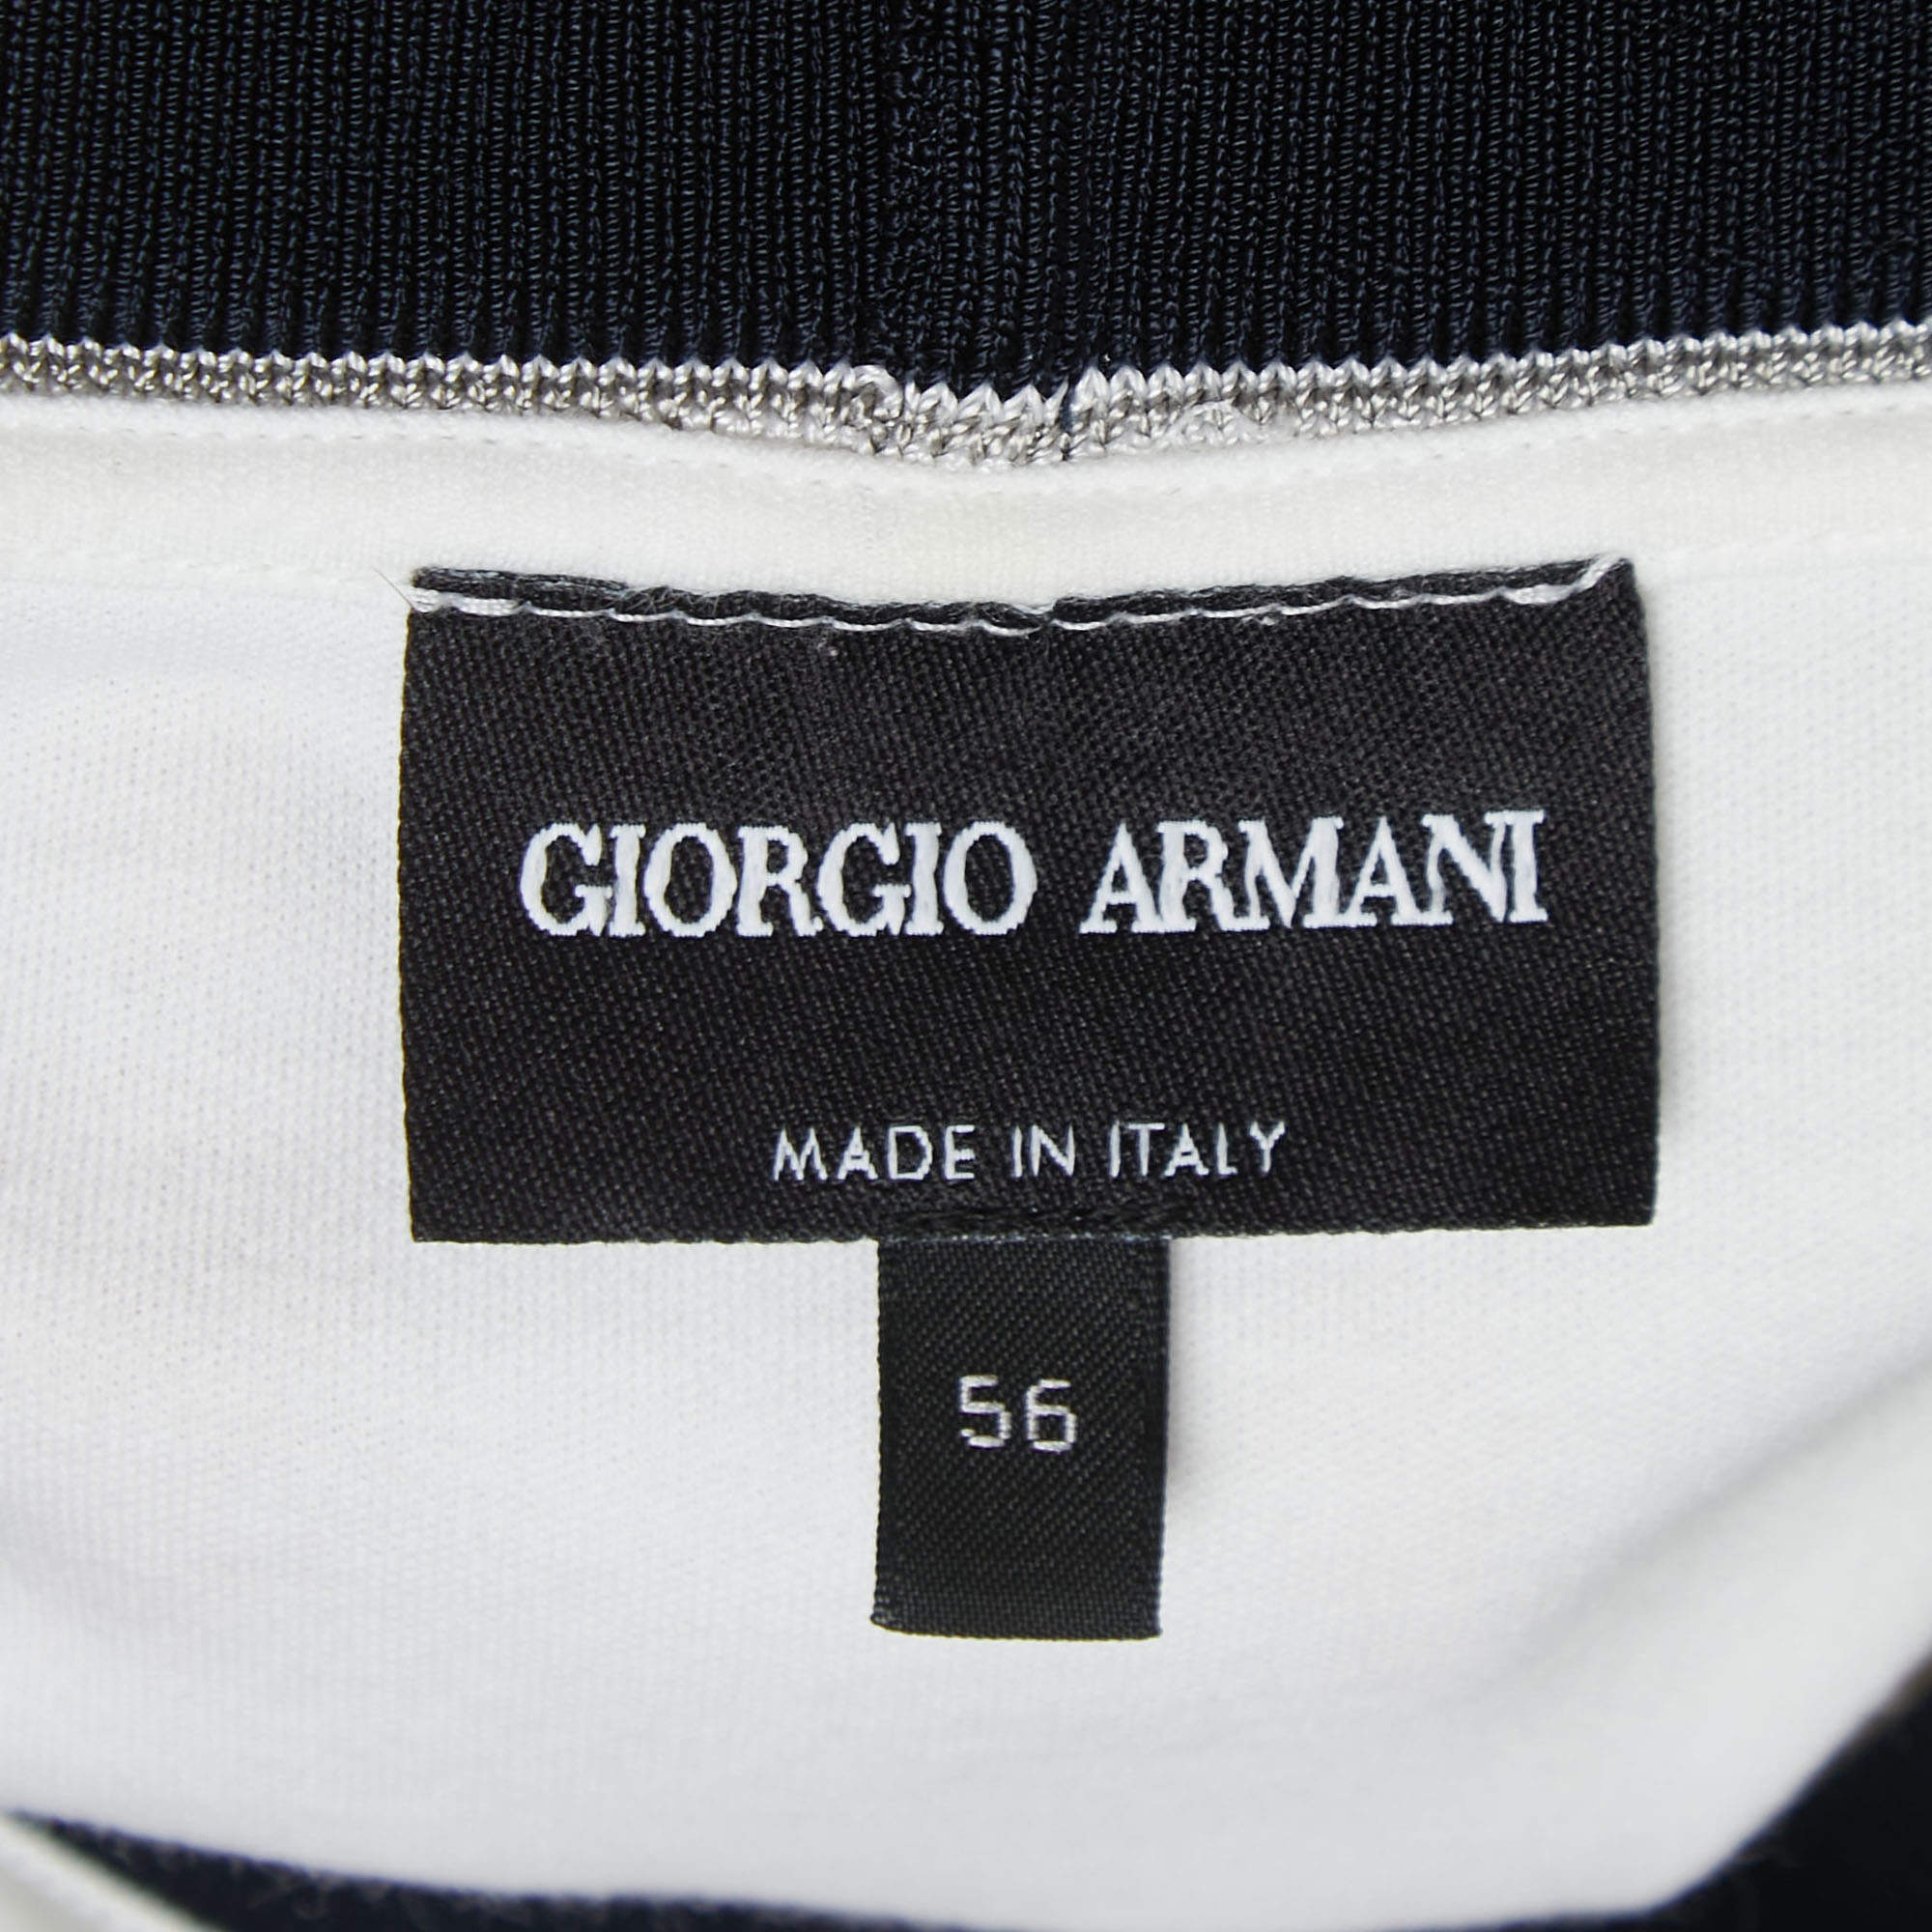 Giorgio Armani Luxury Brand White Polo Shirt - Tagotee